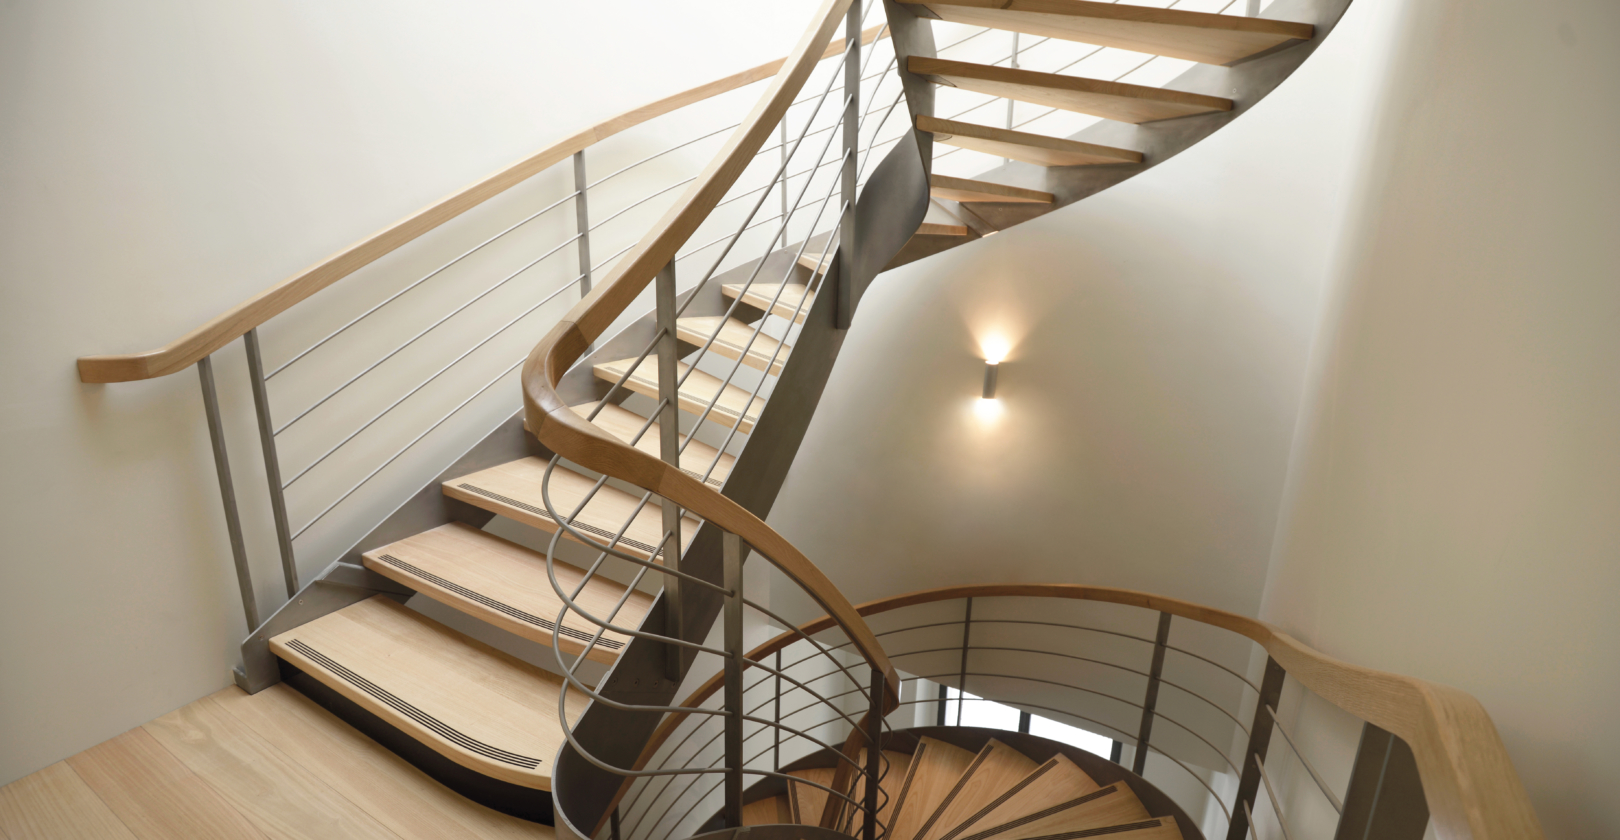 escalier balancé sur mesure avec limons main courante cintrée débillardée architecte françois jeanneau